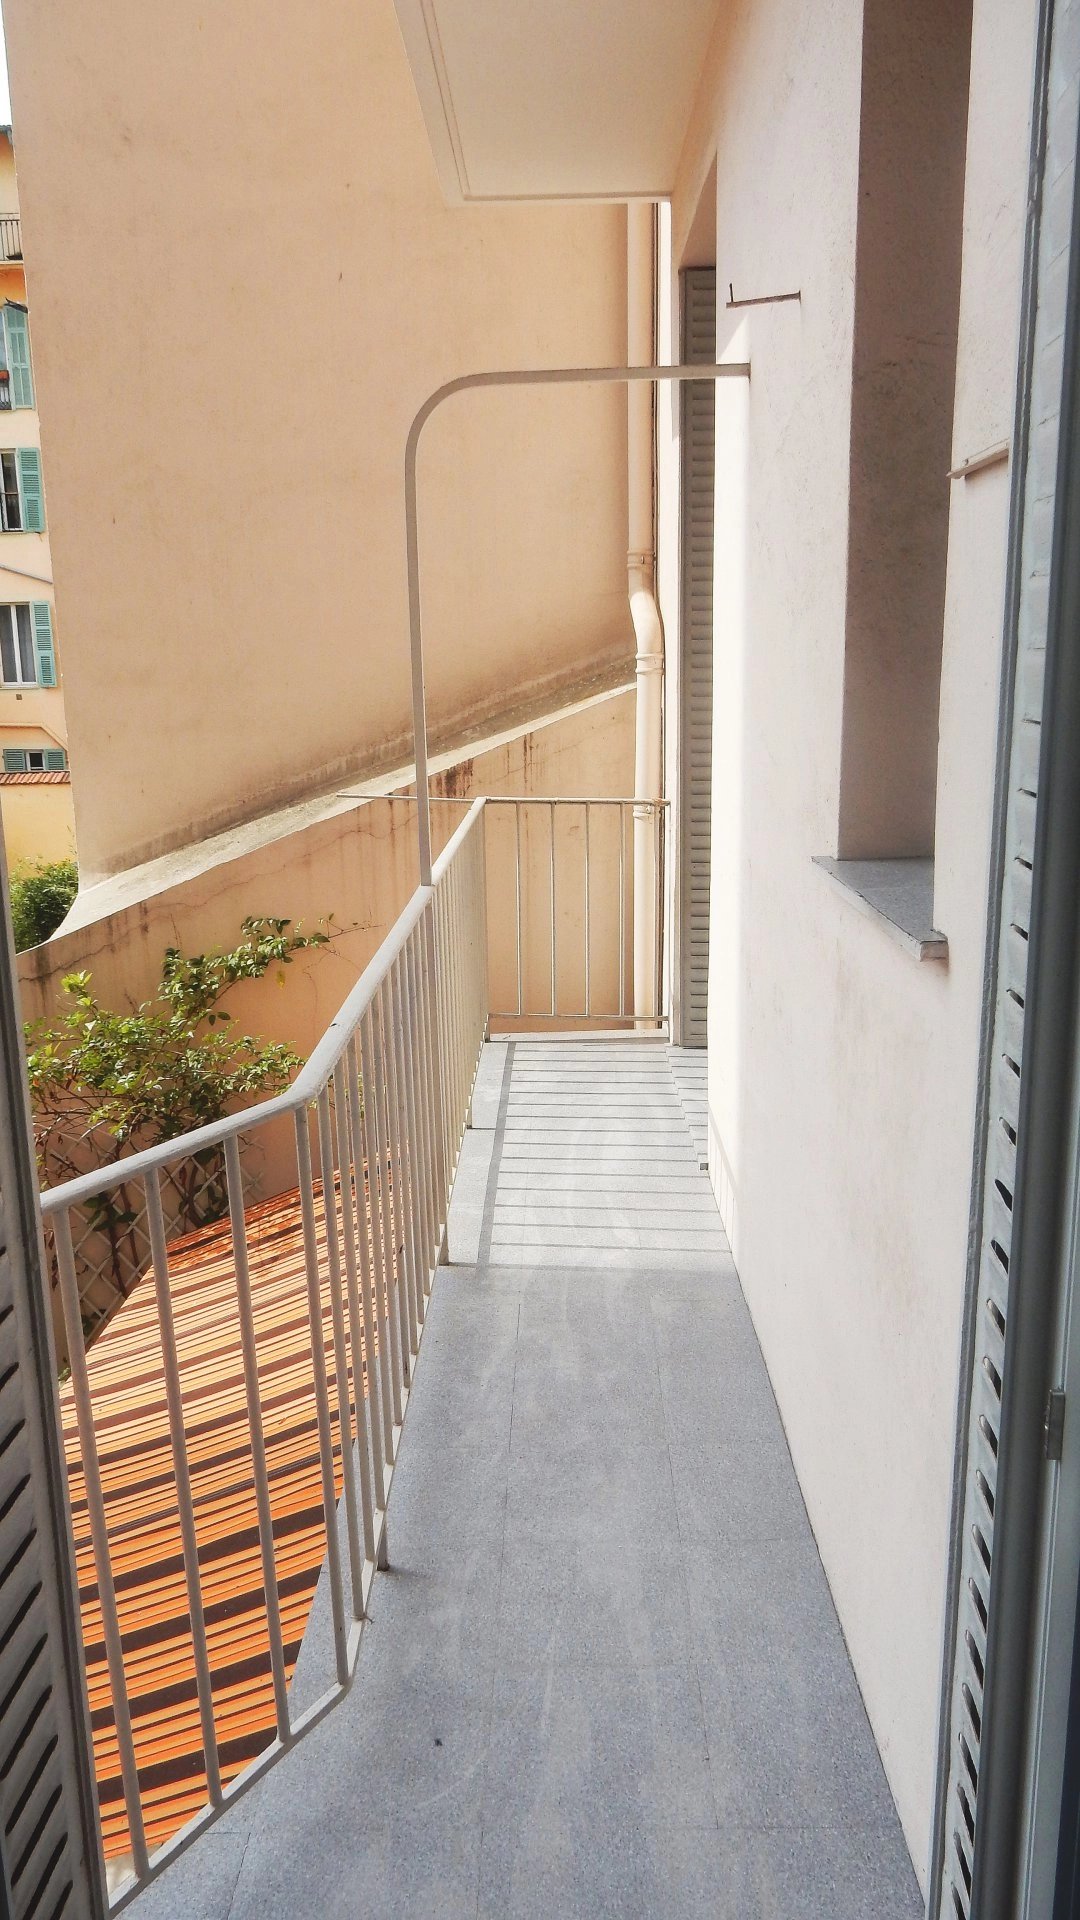 Location appartement 2 pièces 37.34 m² situé à Nice quartier Port